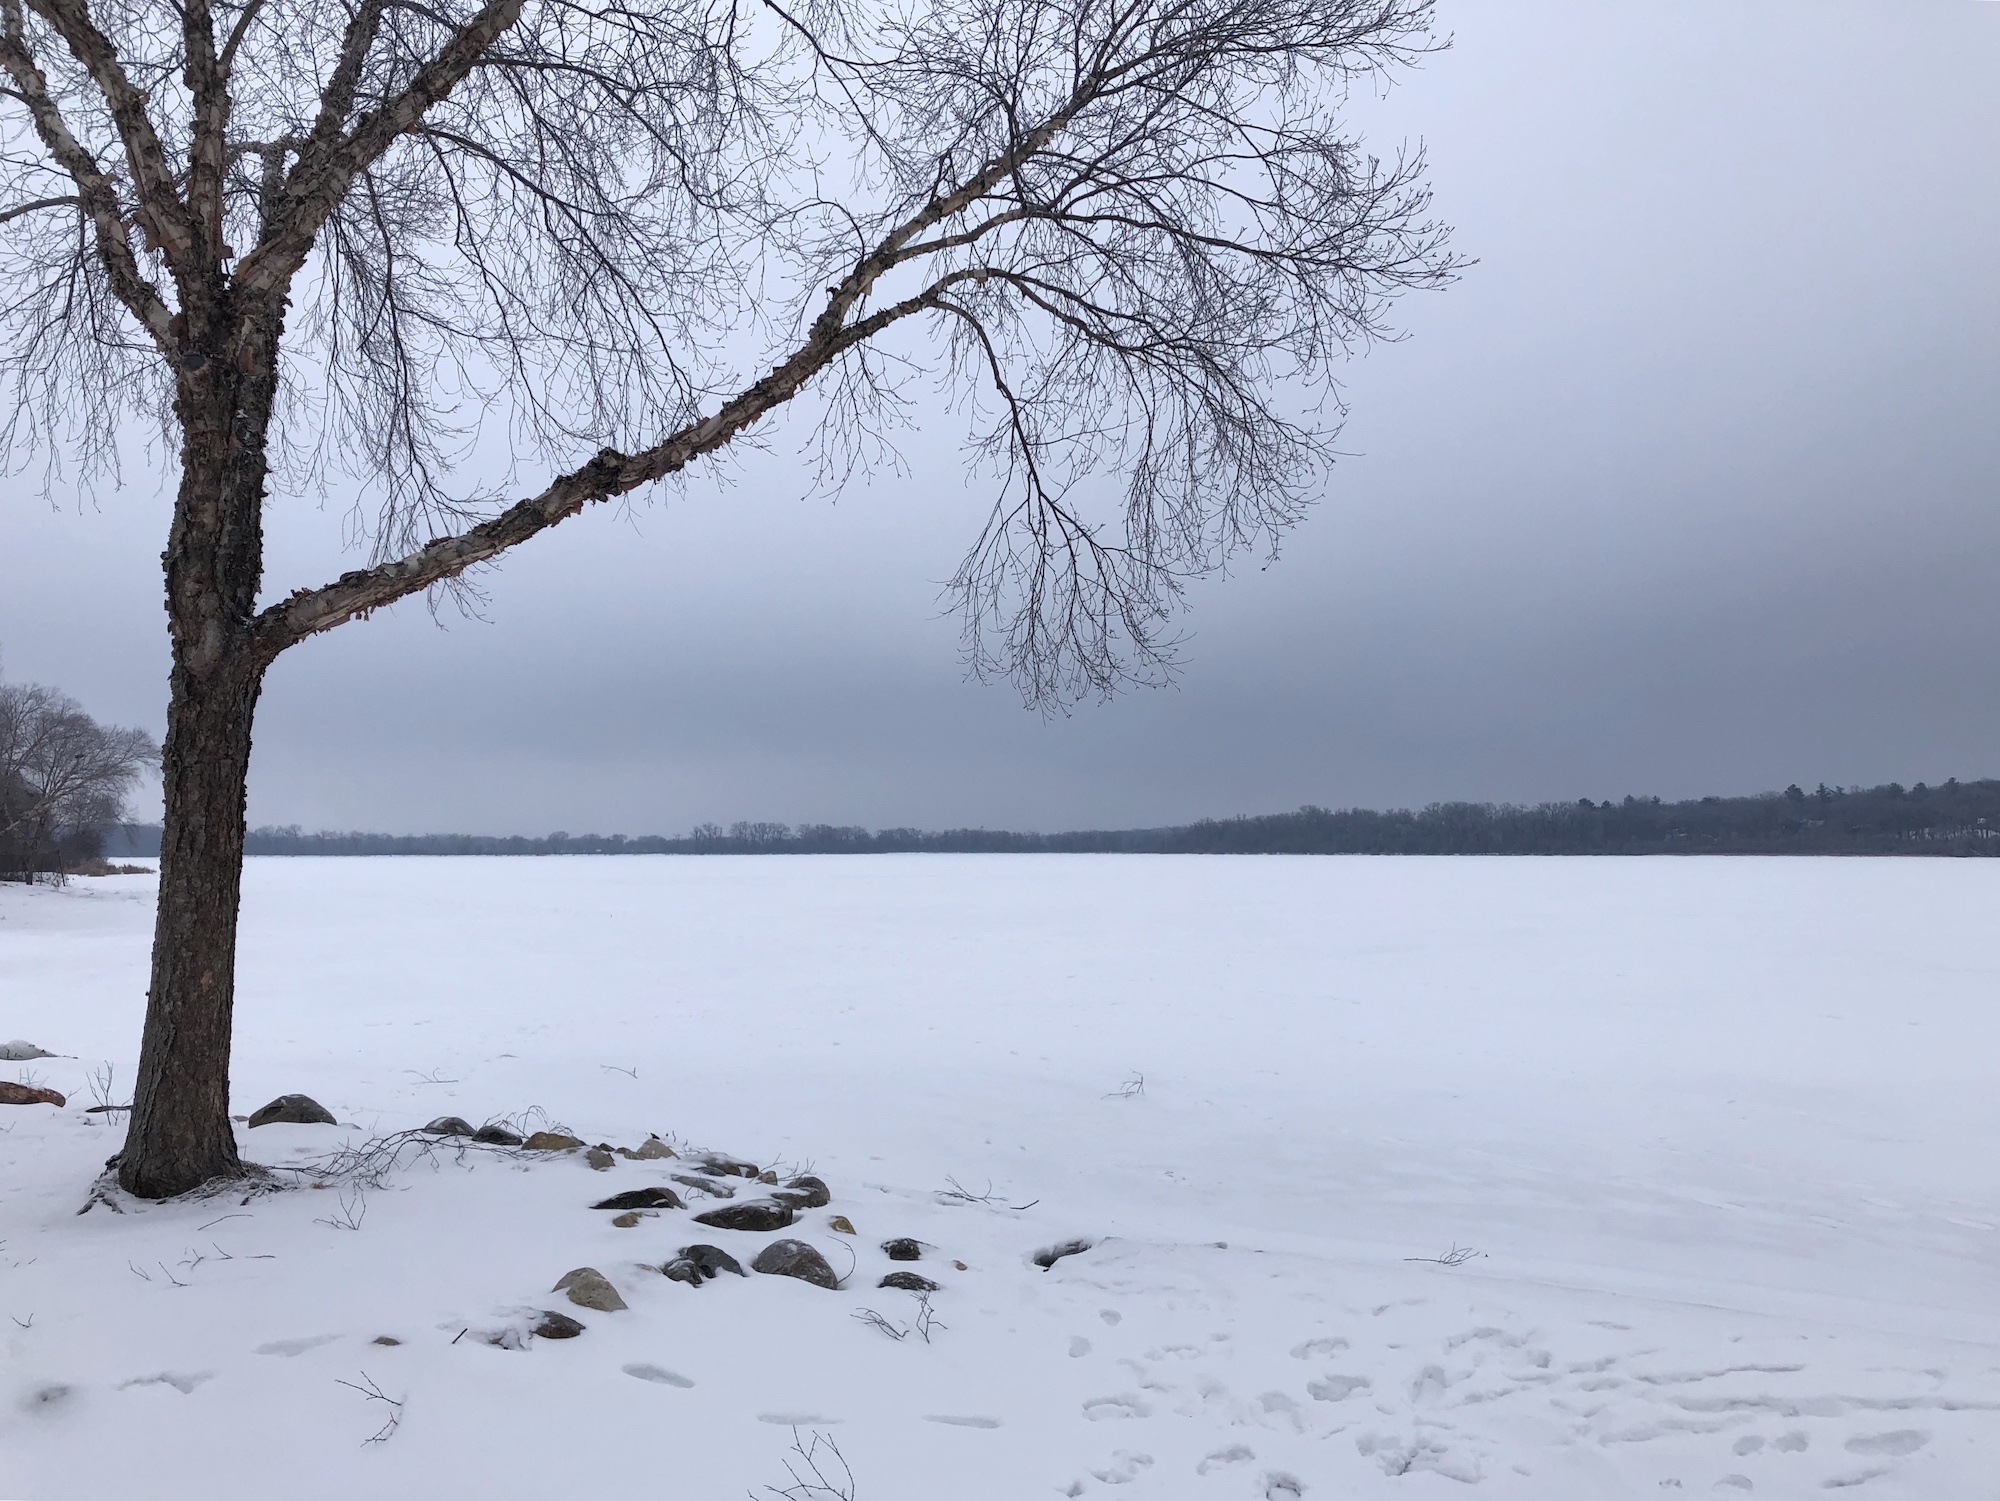 Lake Wingra on February 27, 2019.